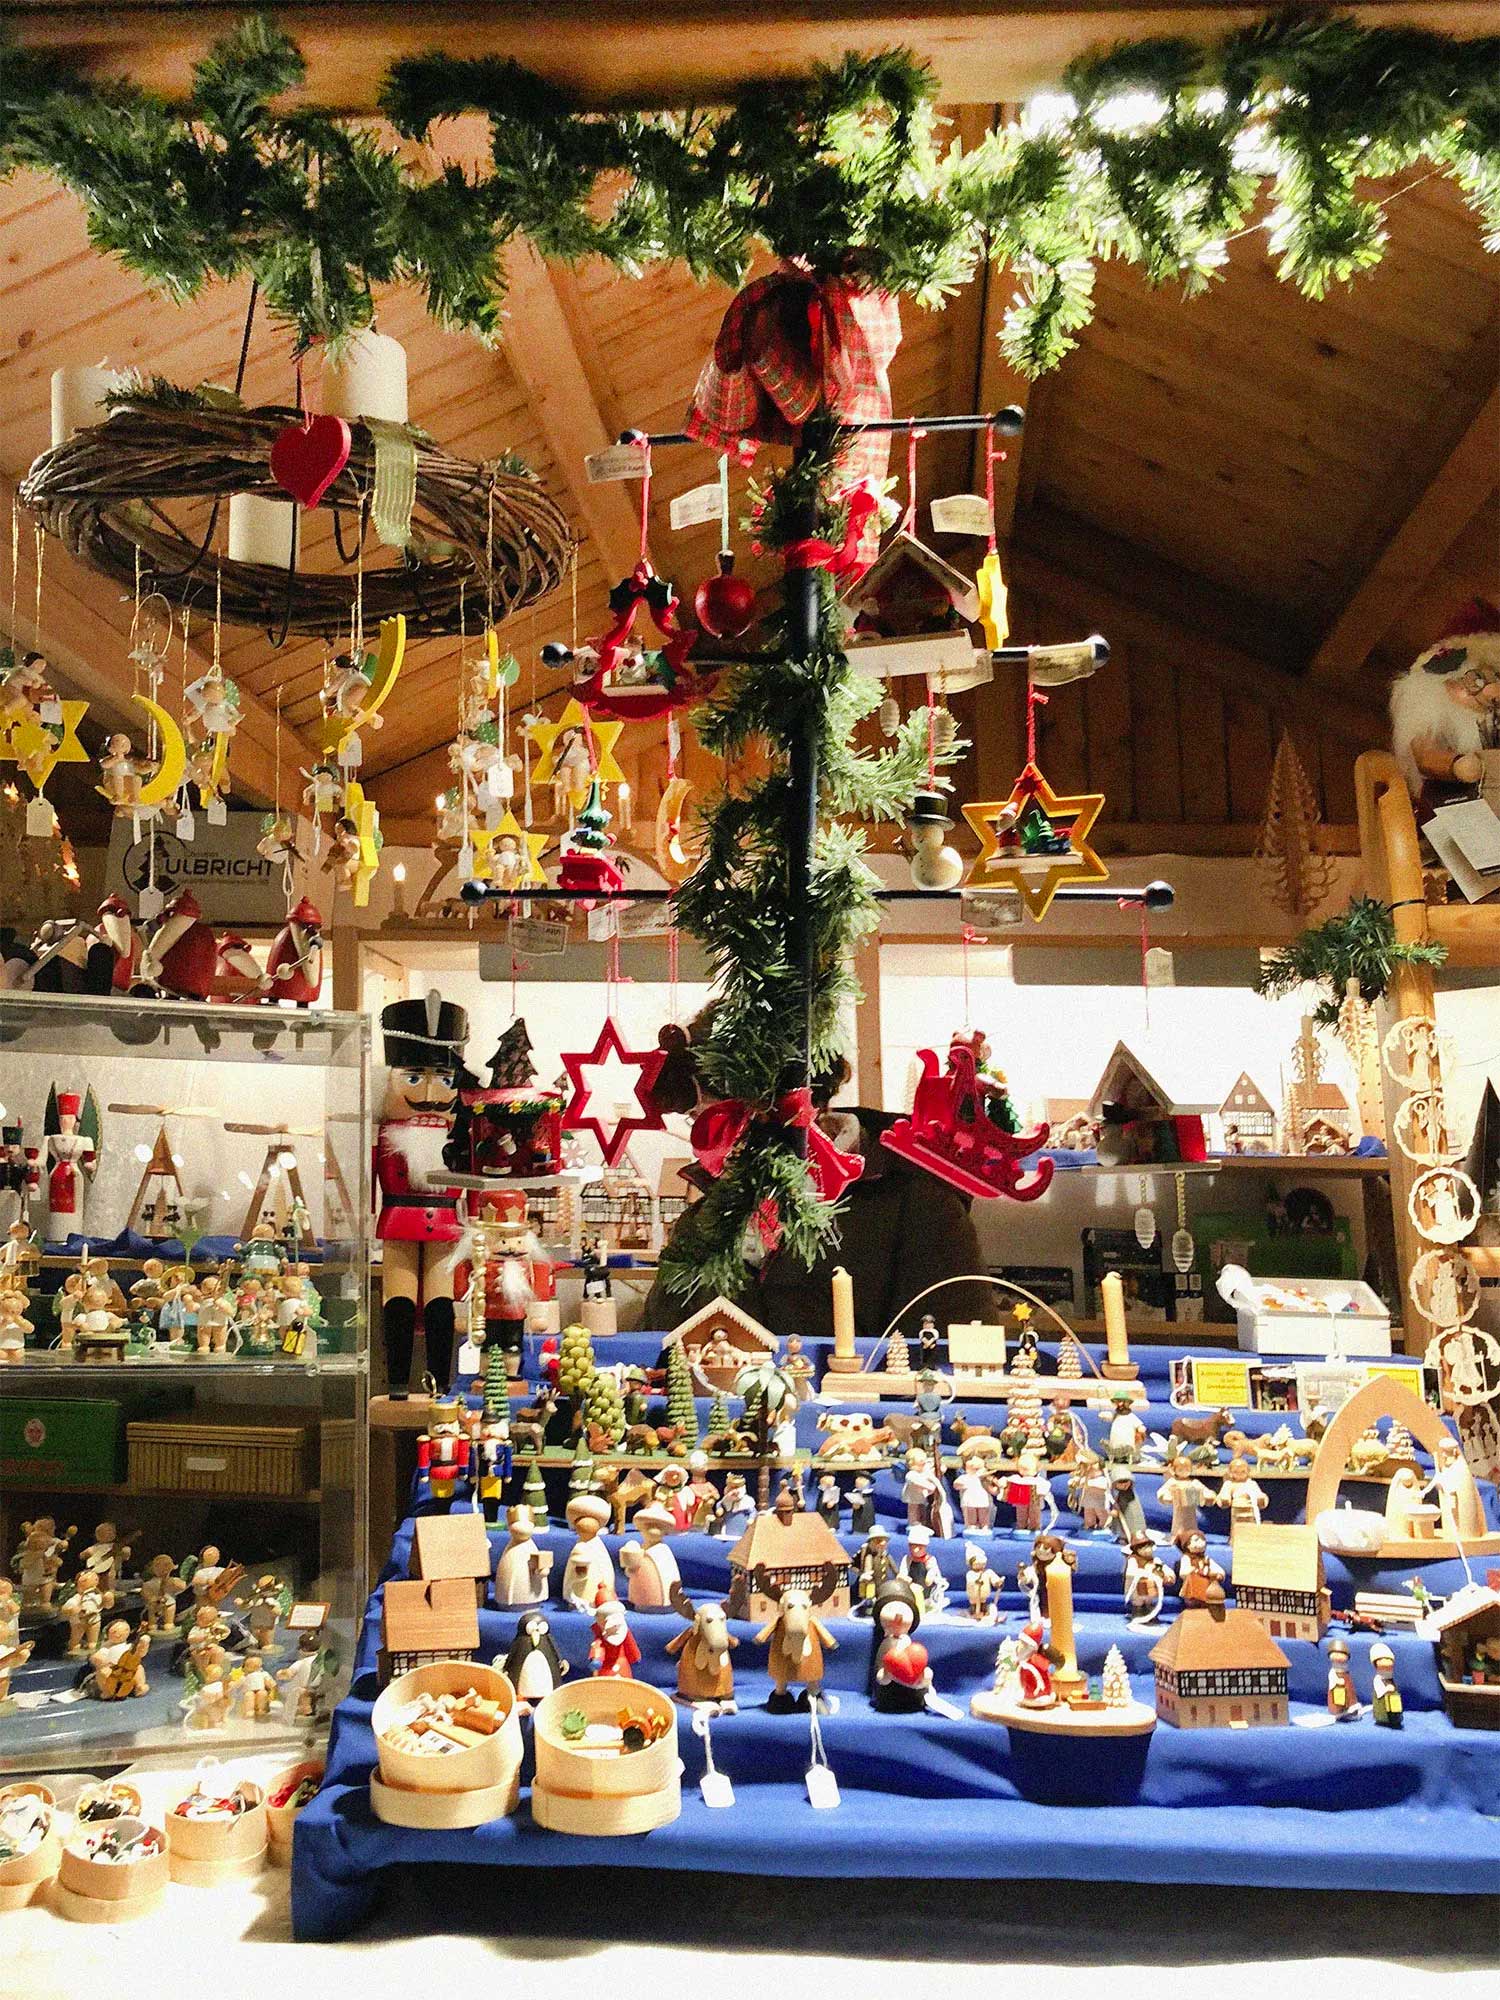 Weihnachtsmarkt, Christmas Market in Germany